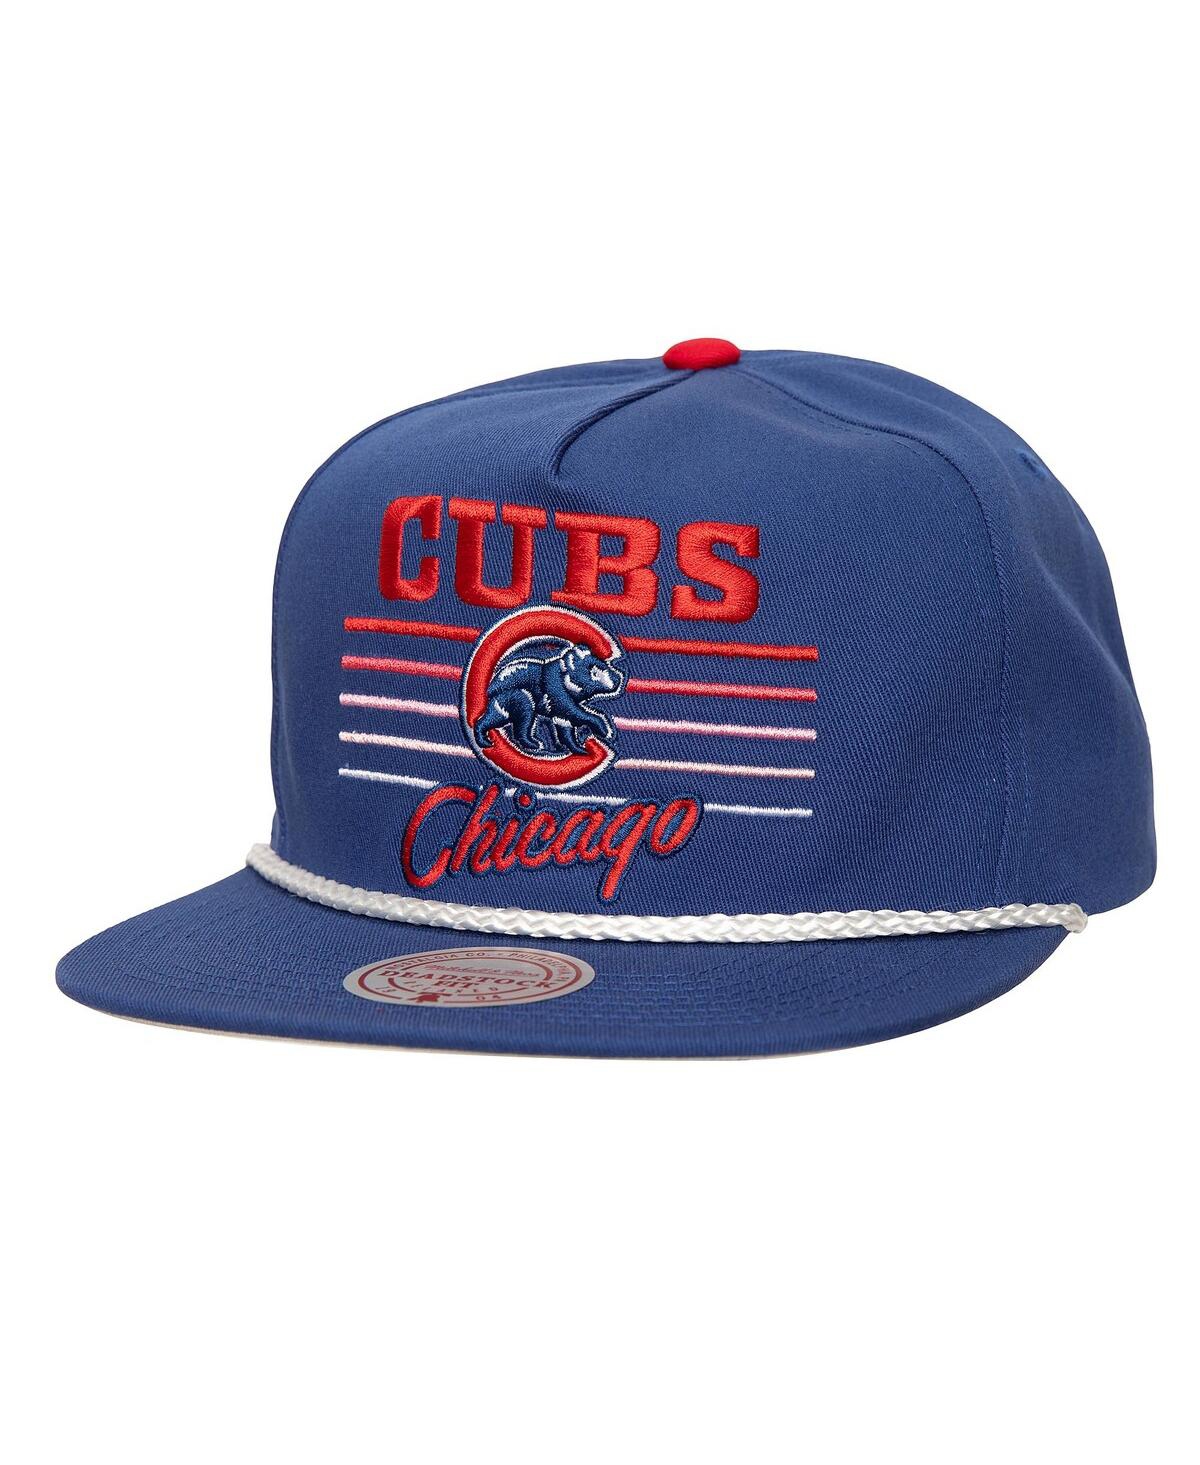 Men's Royal Chicago Cubs Radiant Lines Deadstock Snapback Hat - Royal